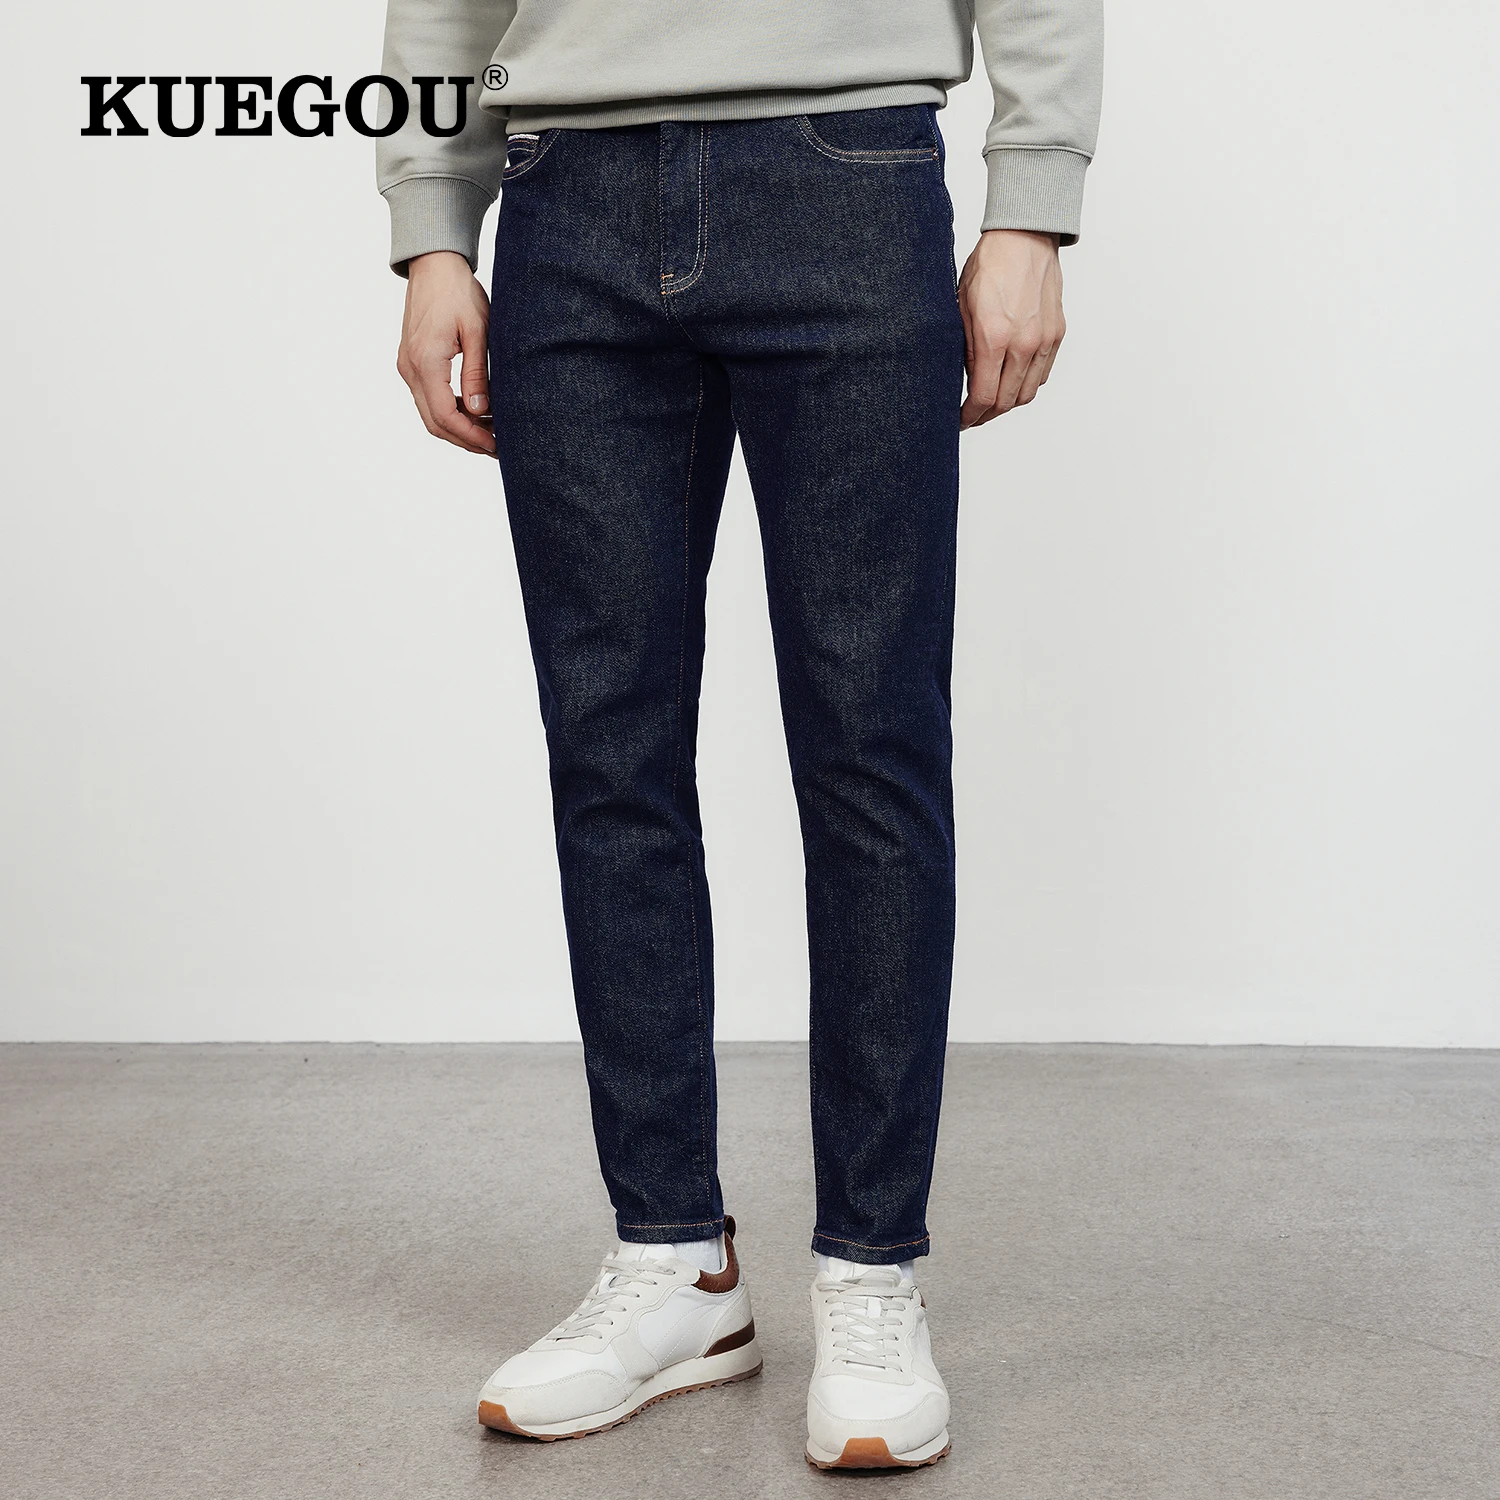 

KUEGOU 2022 Autumn Cotton Jeans Men Blue Plain Fashion Slim Fit Pocket Denim Buttons New Pants For Male Wear Straight Trousers